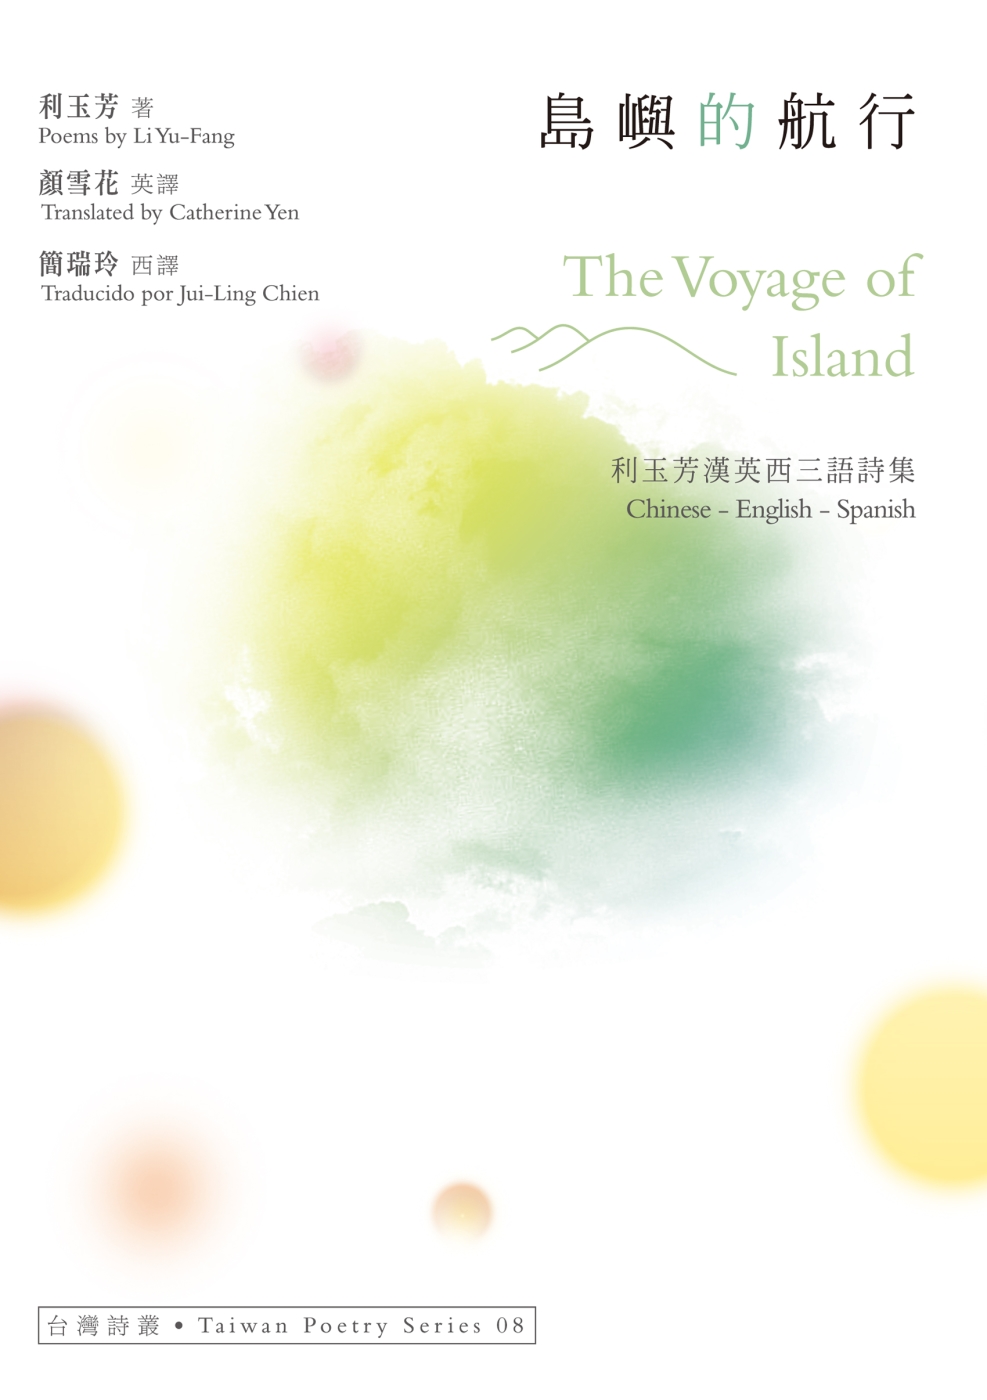 島嶼的航行 The Voyage of Island：利玉芳漢英西三語詩集